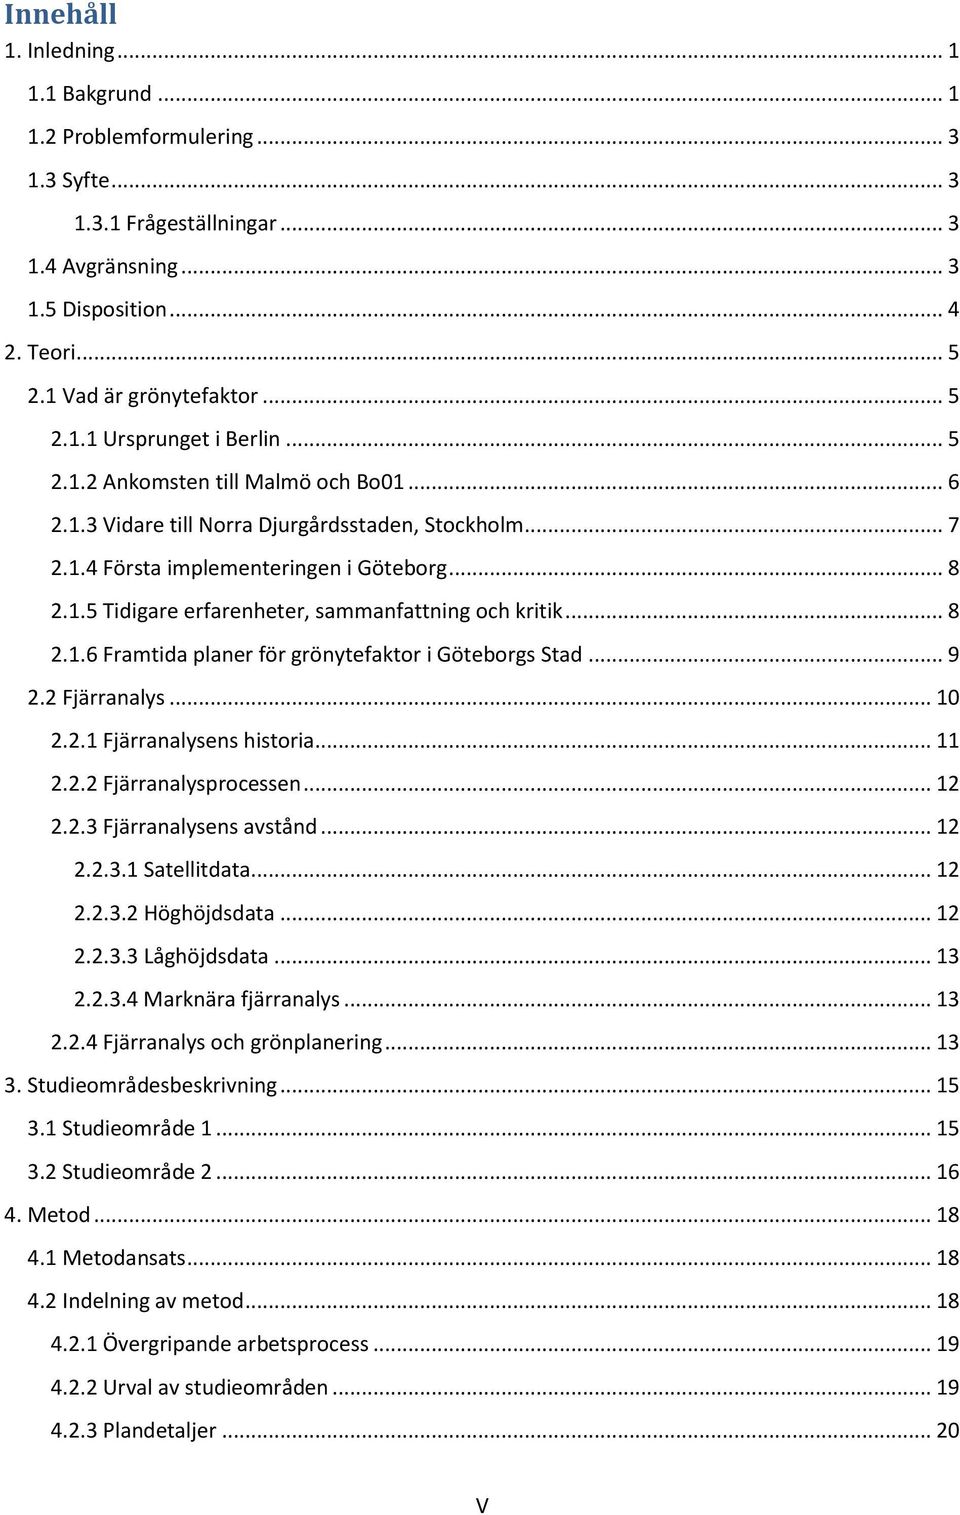 .. 8 2.1.6 Framtida planer för grönytefaktor i Göteborgs Stad... 9 2.2 Fjärranalys... 10 2.2.1 Fjärranalysens historia... 11 2.2.2 Fjärranalysprocessen... 12 2.2.3 Fjärranalysens avstånd... 12 2.2.3.1 Satellitdata.